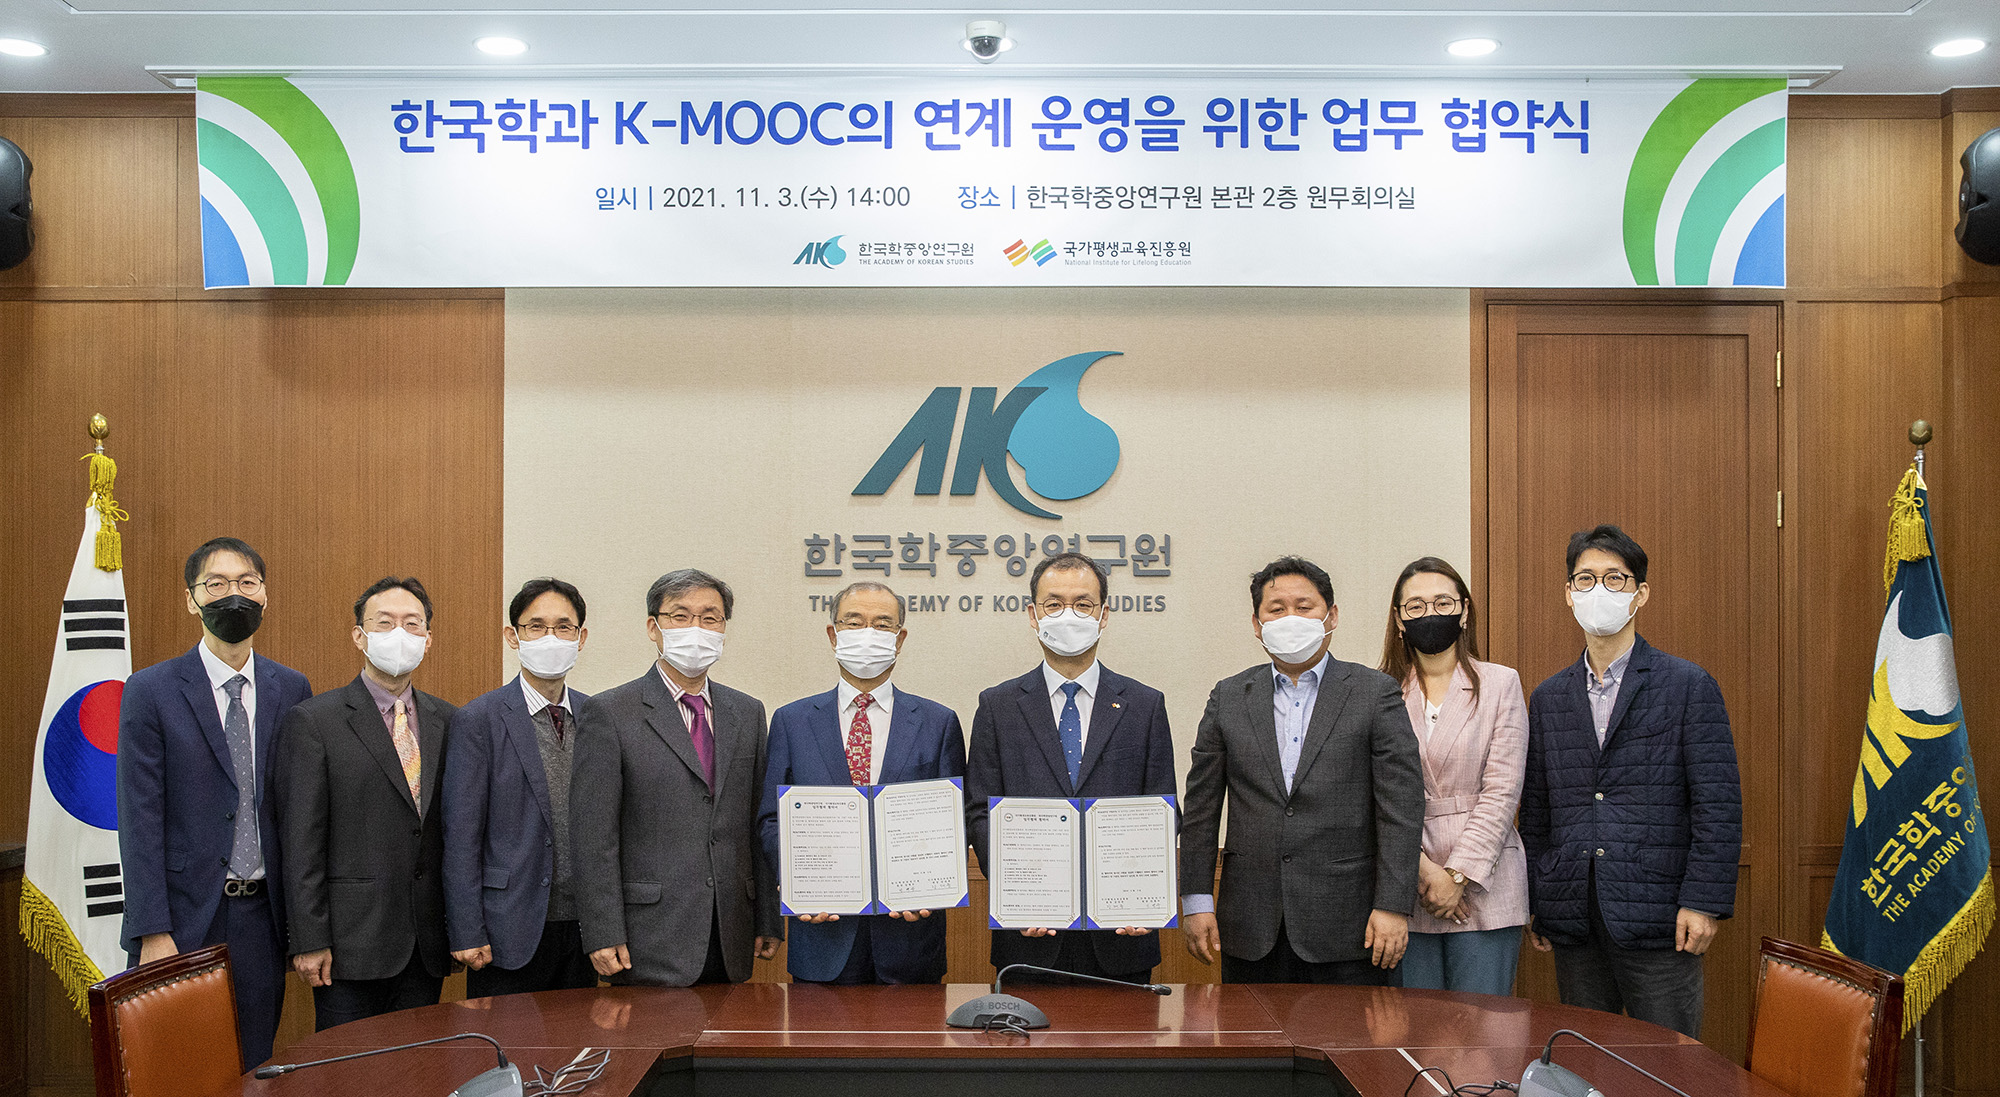 한국학과 K-MOOC의 연계 운영을 위한 업무 협약식